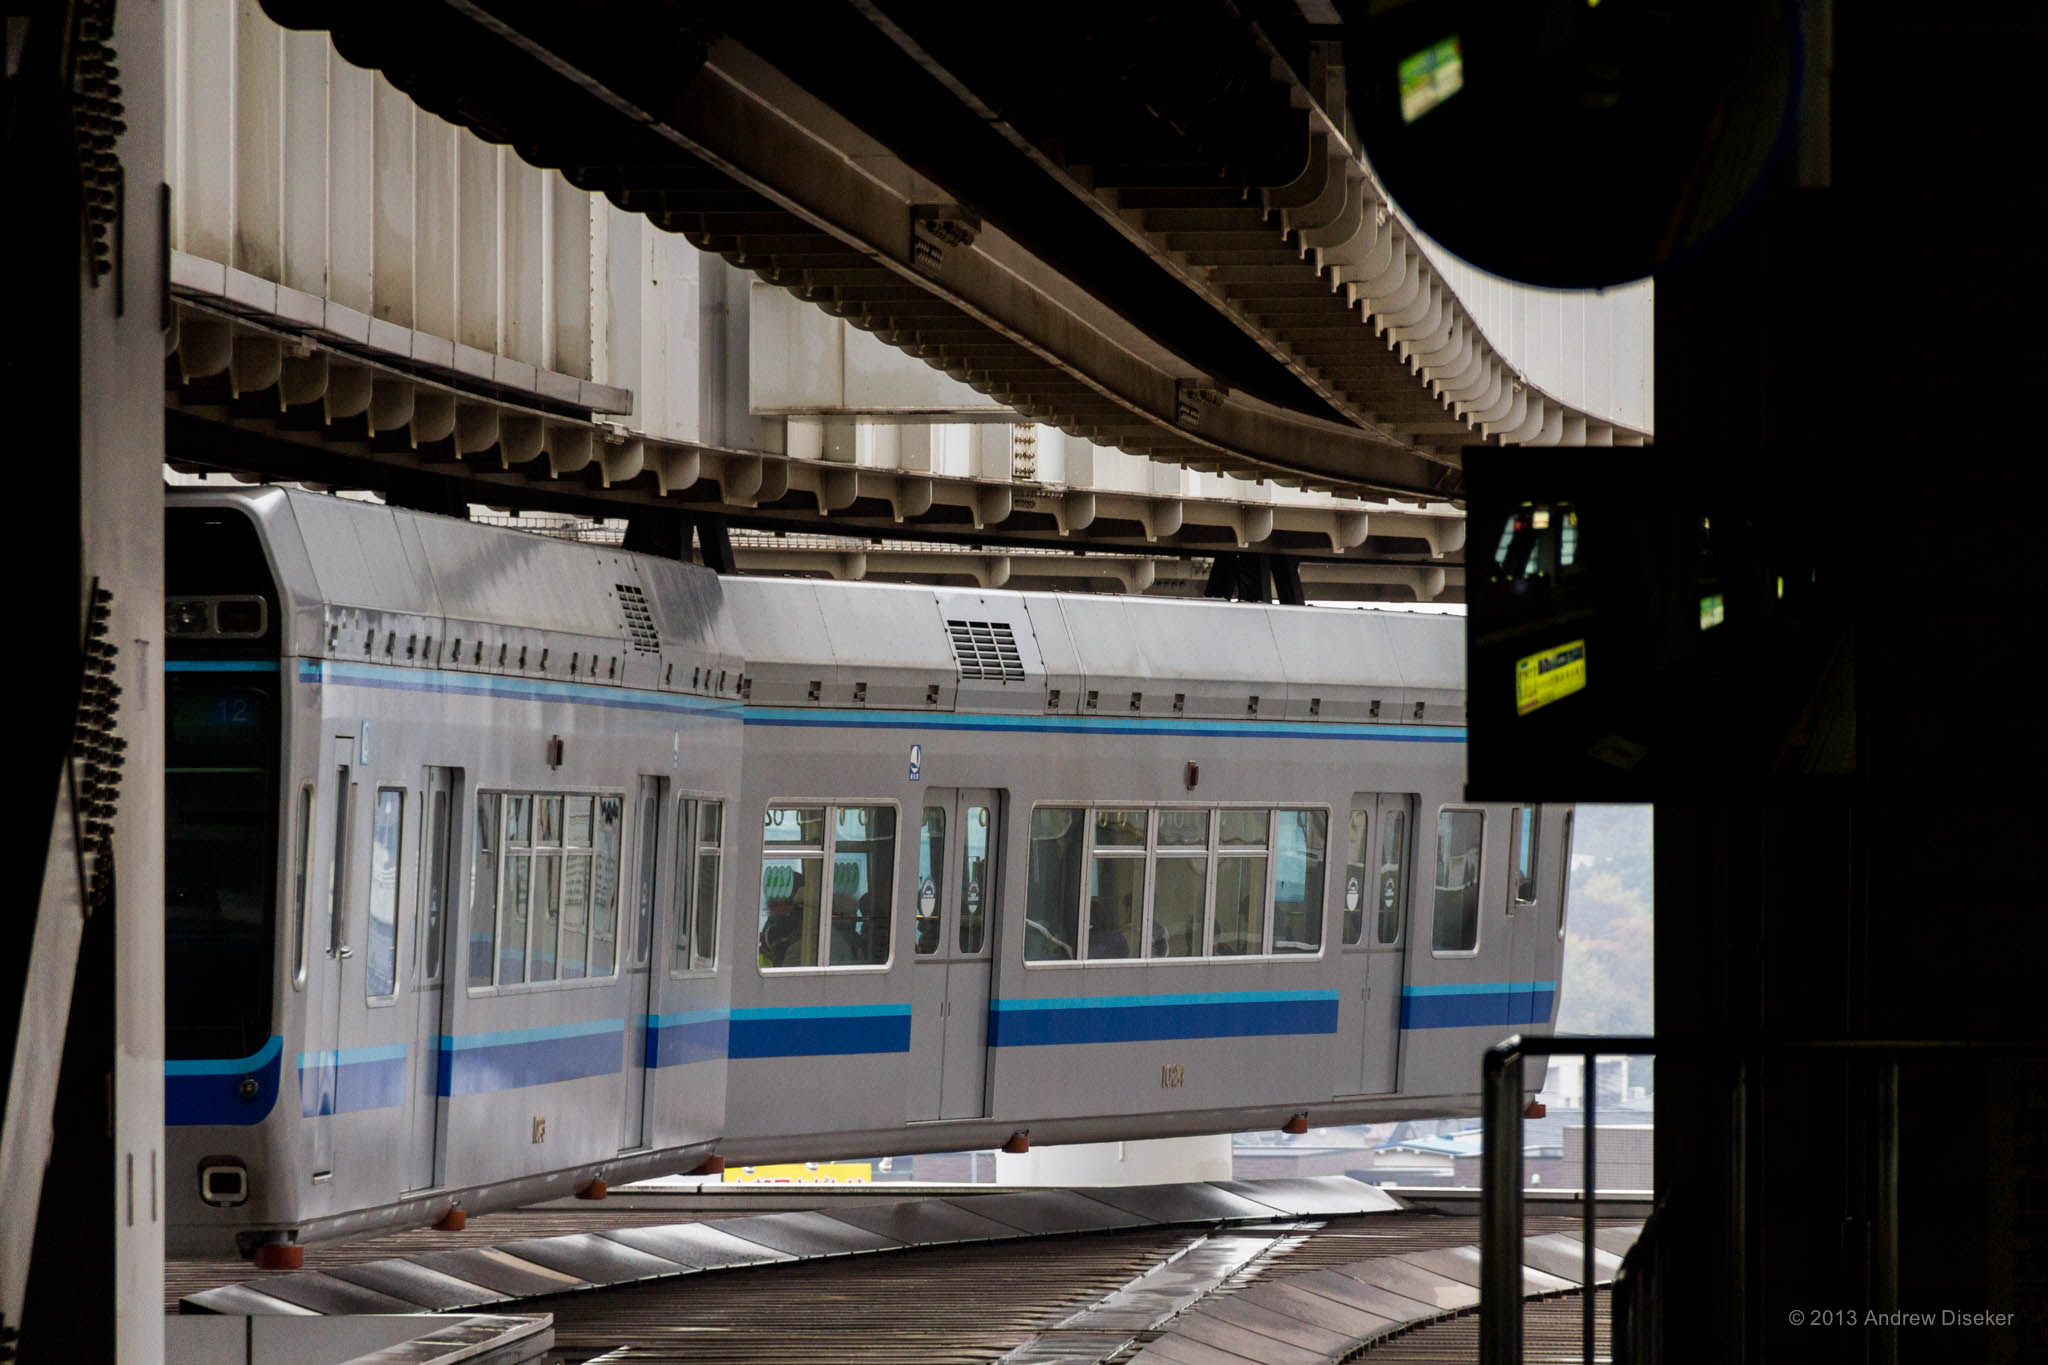 The Chiba Monorail